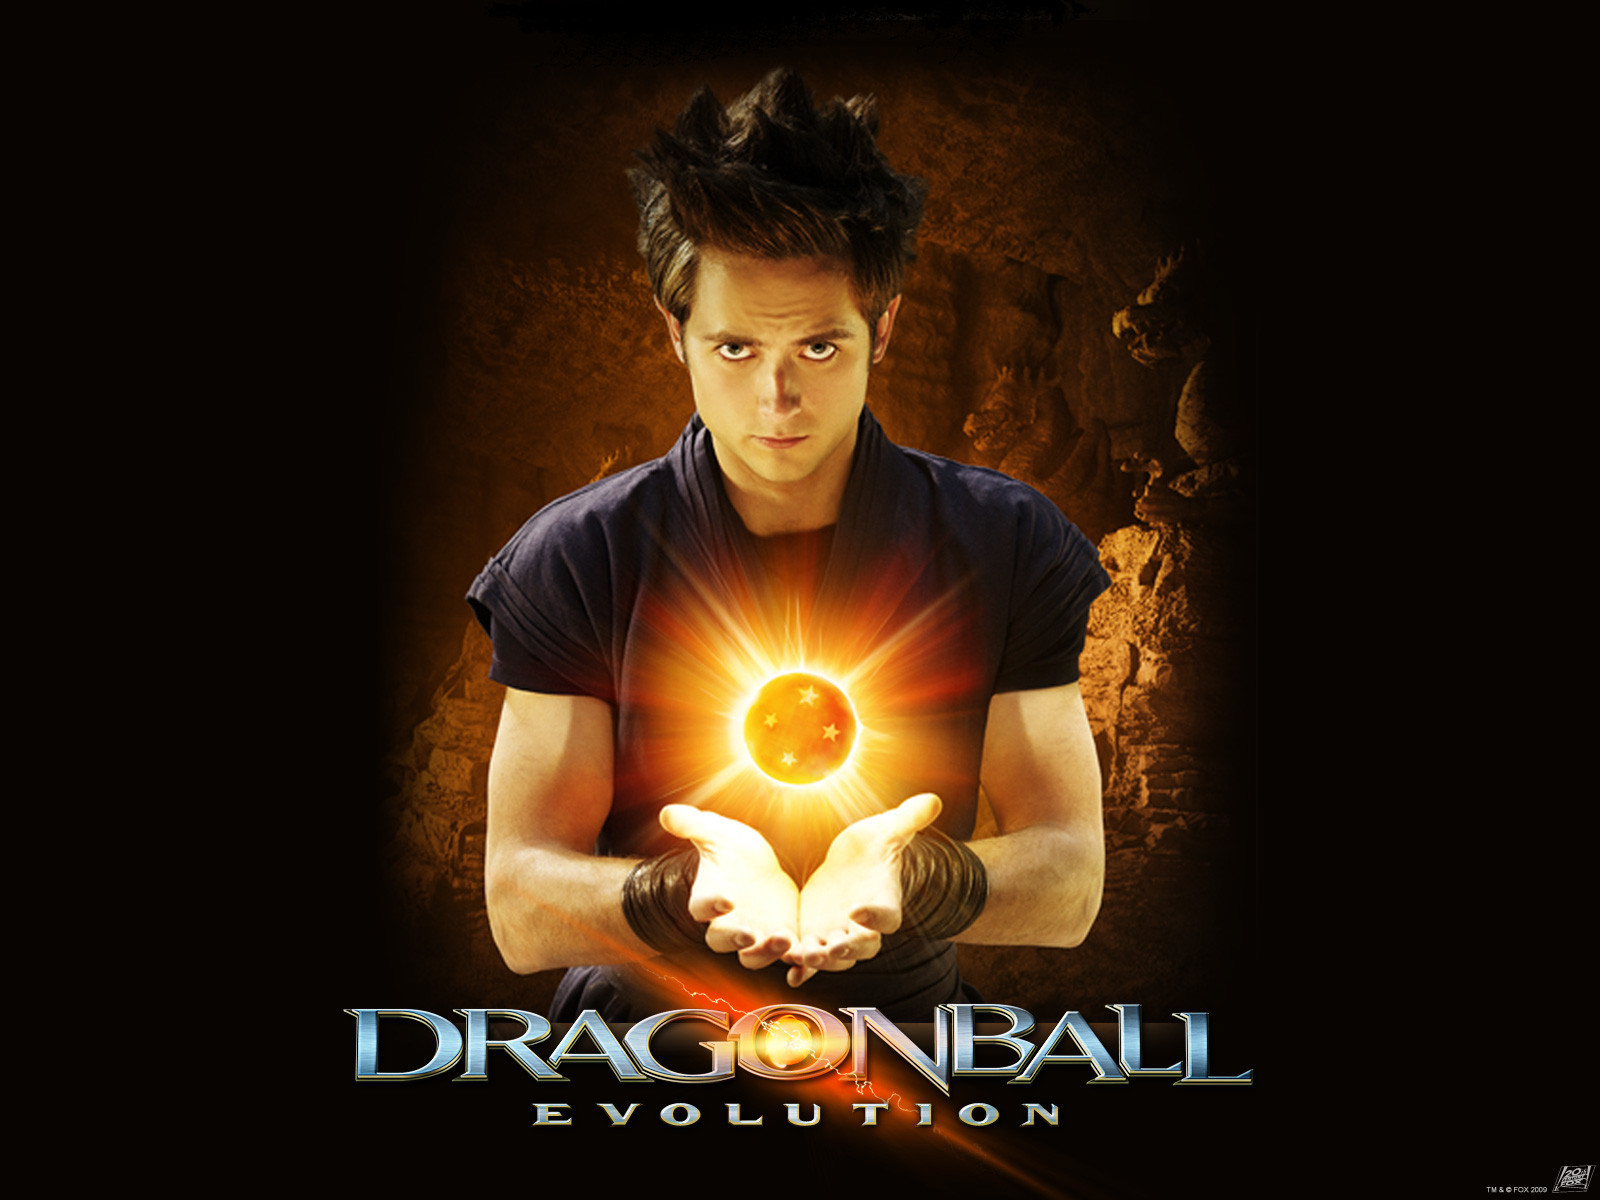 Dragonball: Evolution - Dragonball: The Movie Wallpaper (8437098) - Fanpop